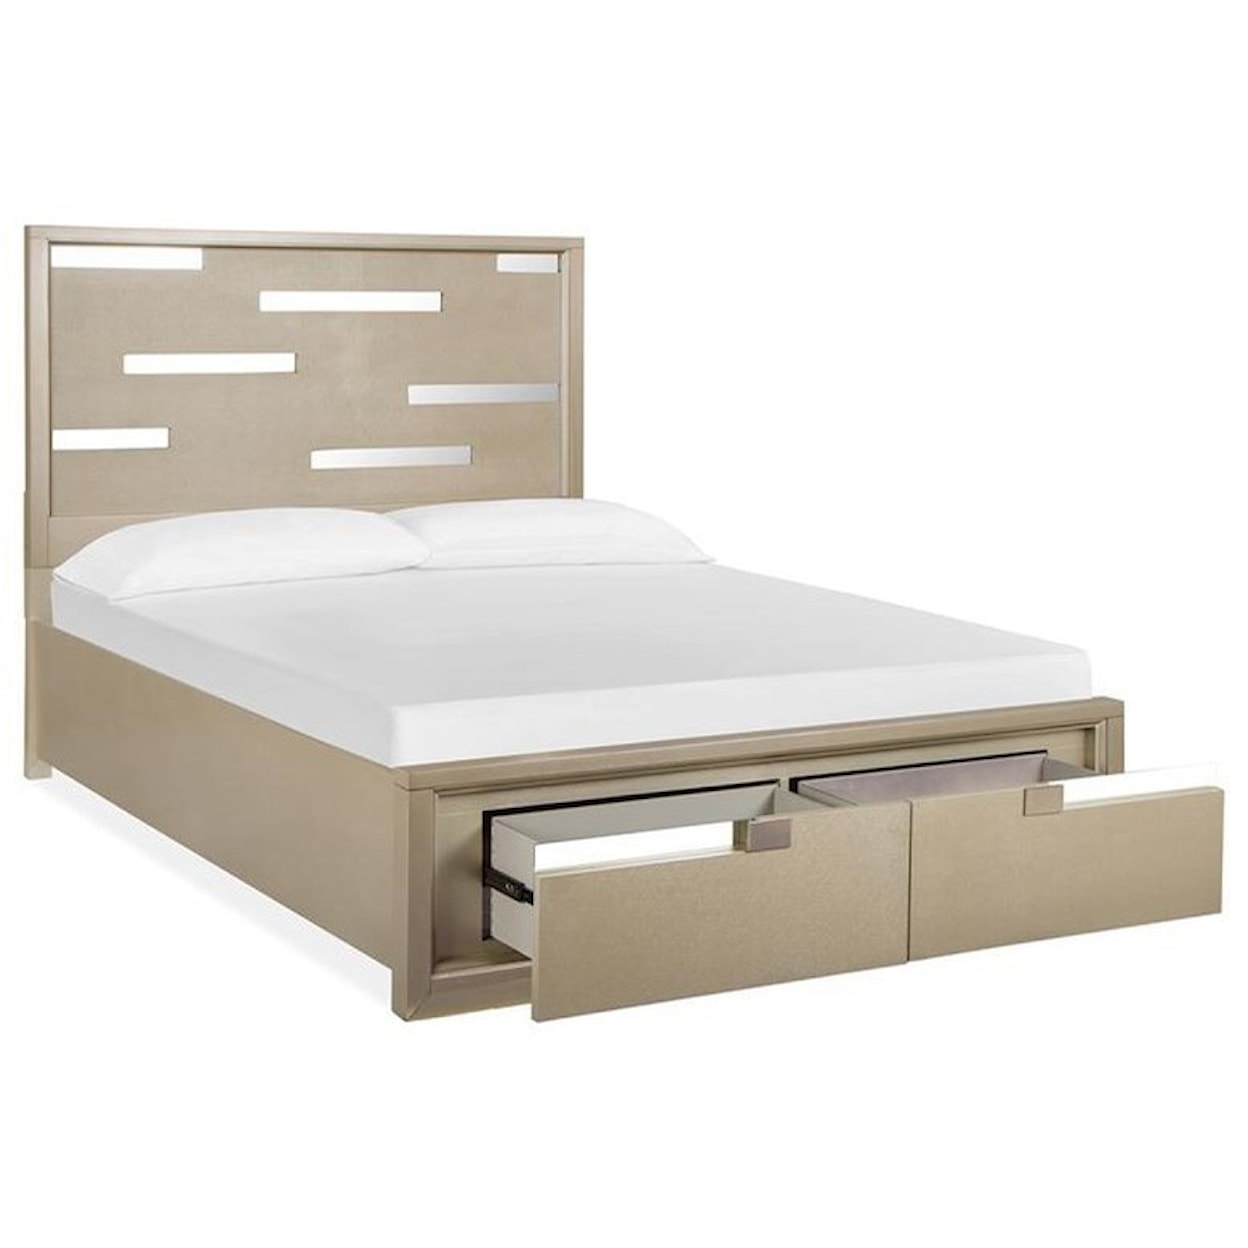 Magnussen Home Chantelle Bedroom Queen Panel Bed with Storage